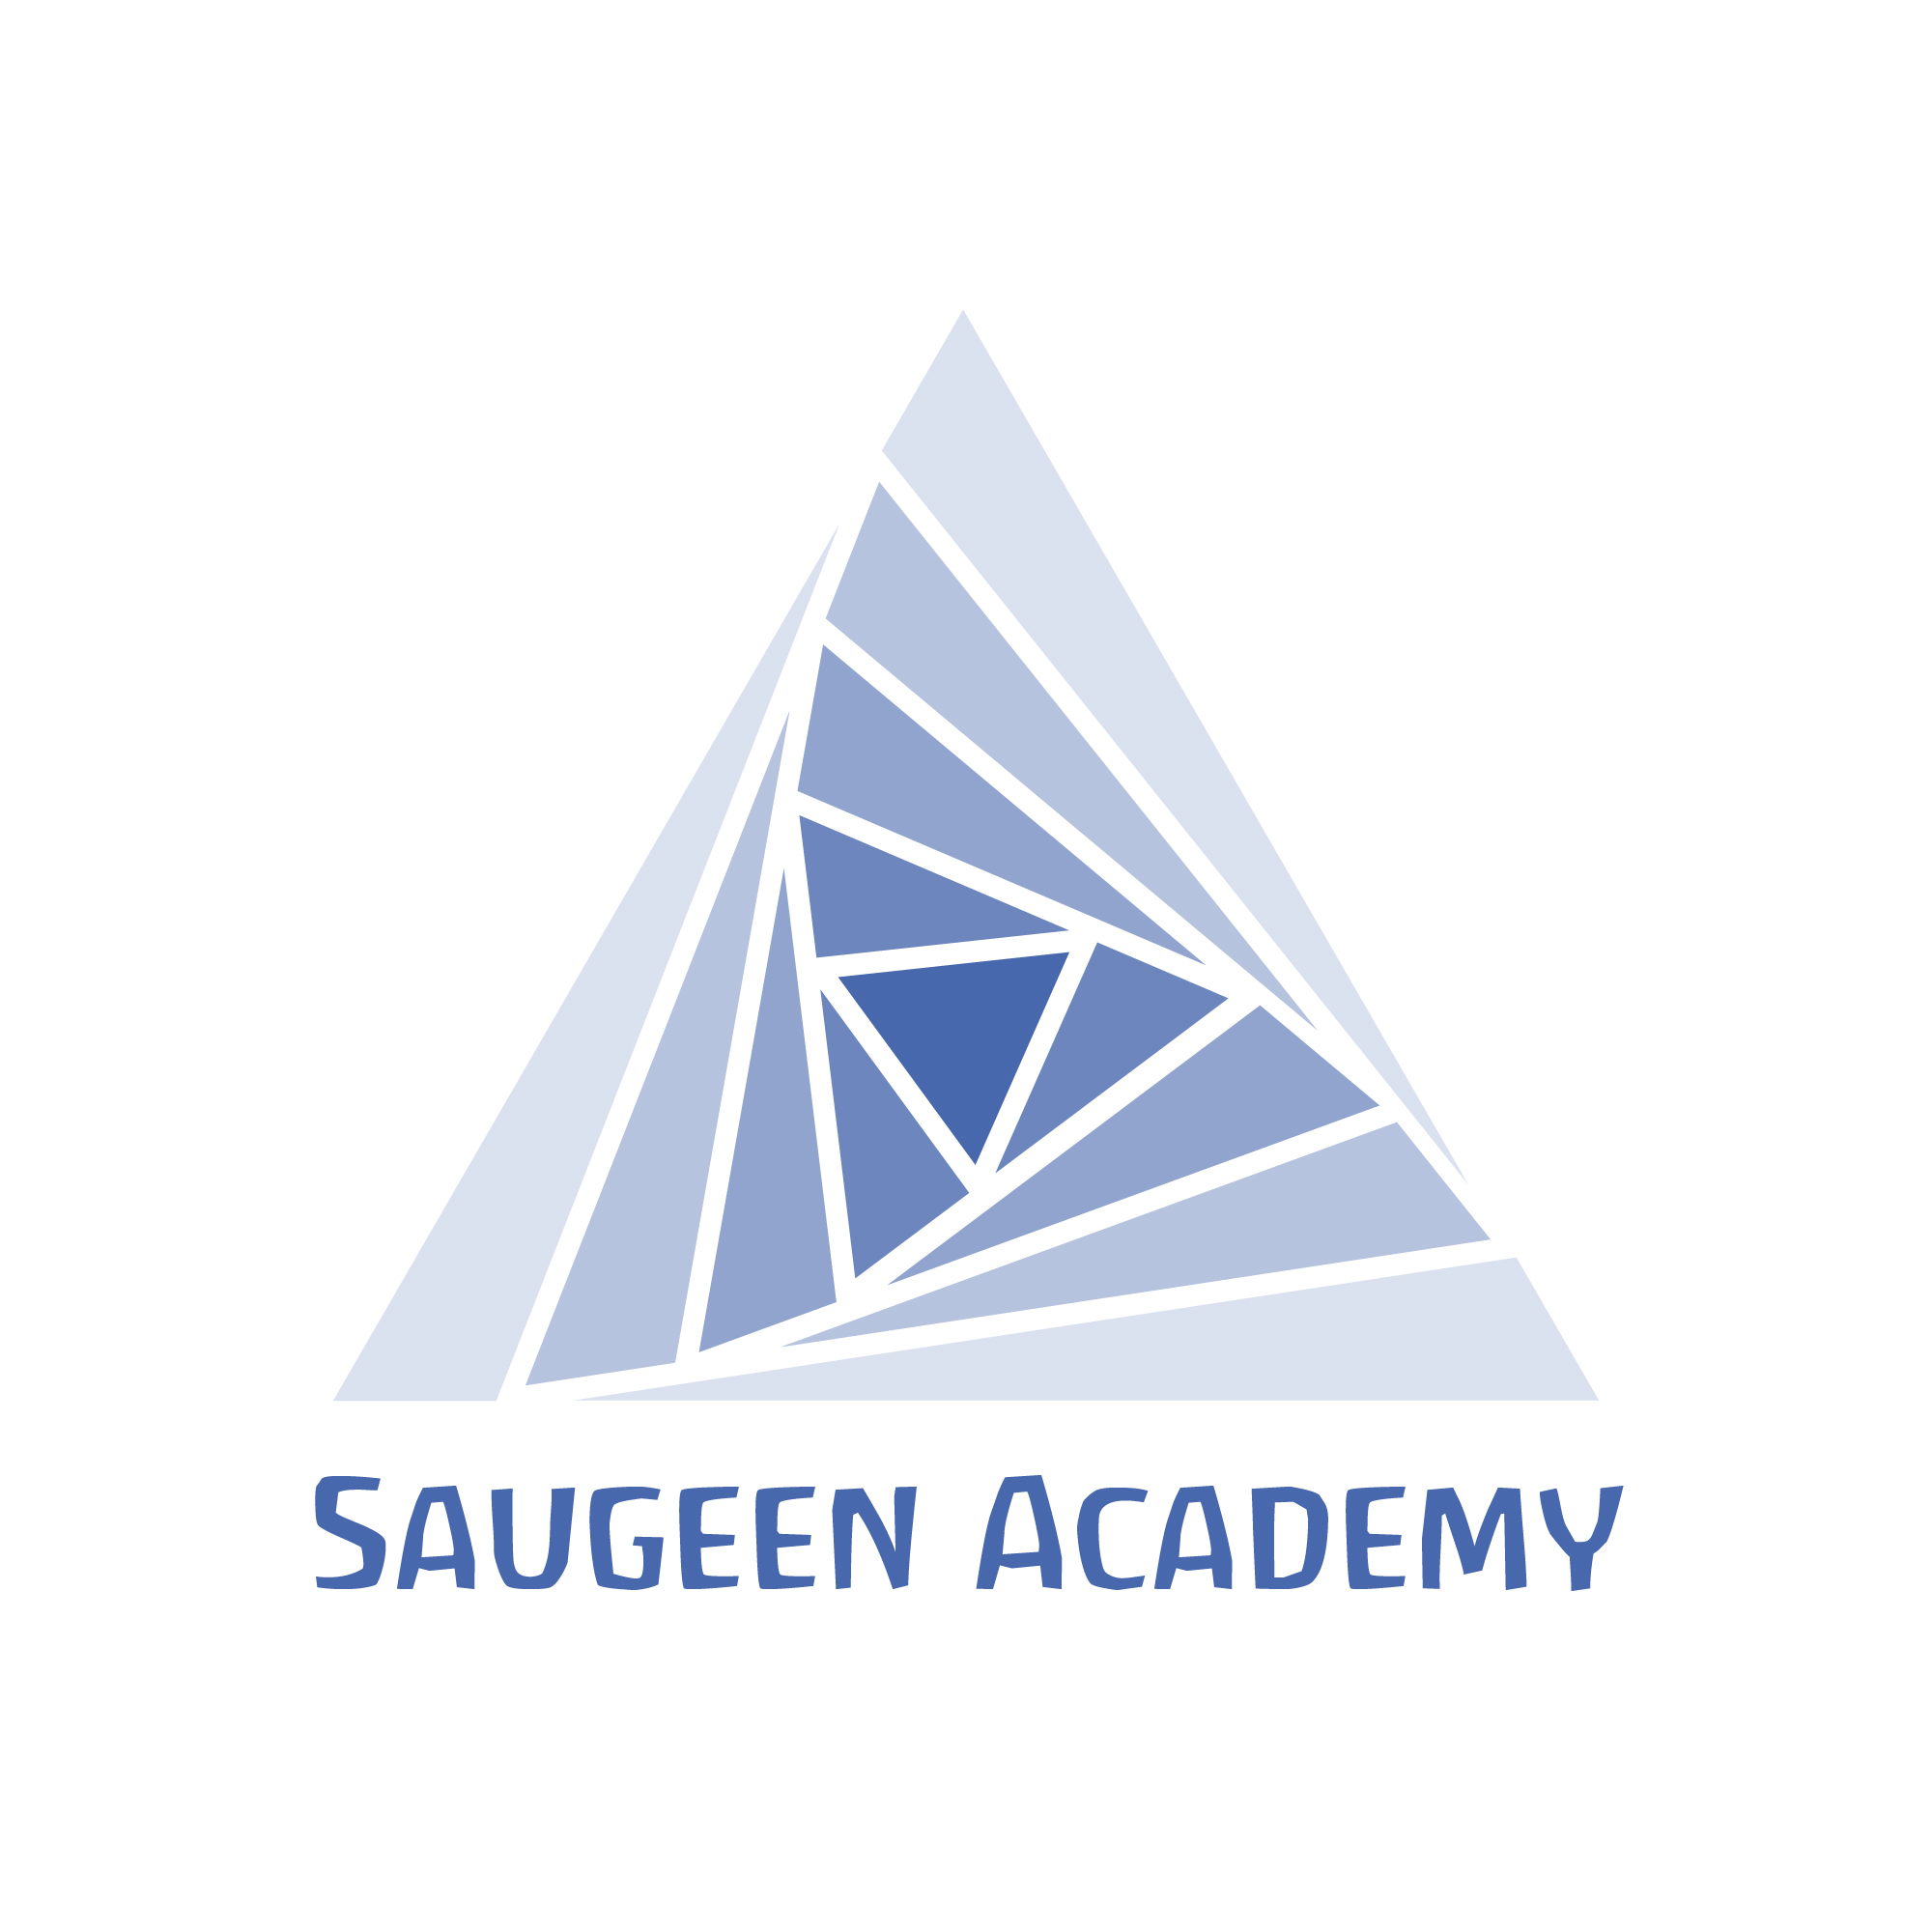 Saugeen Academy logo